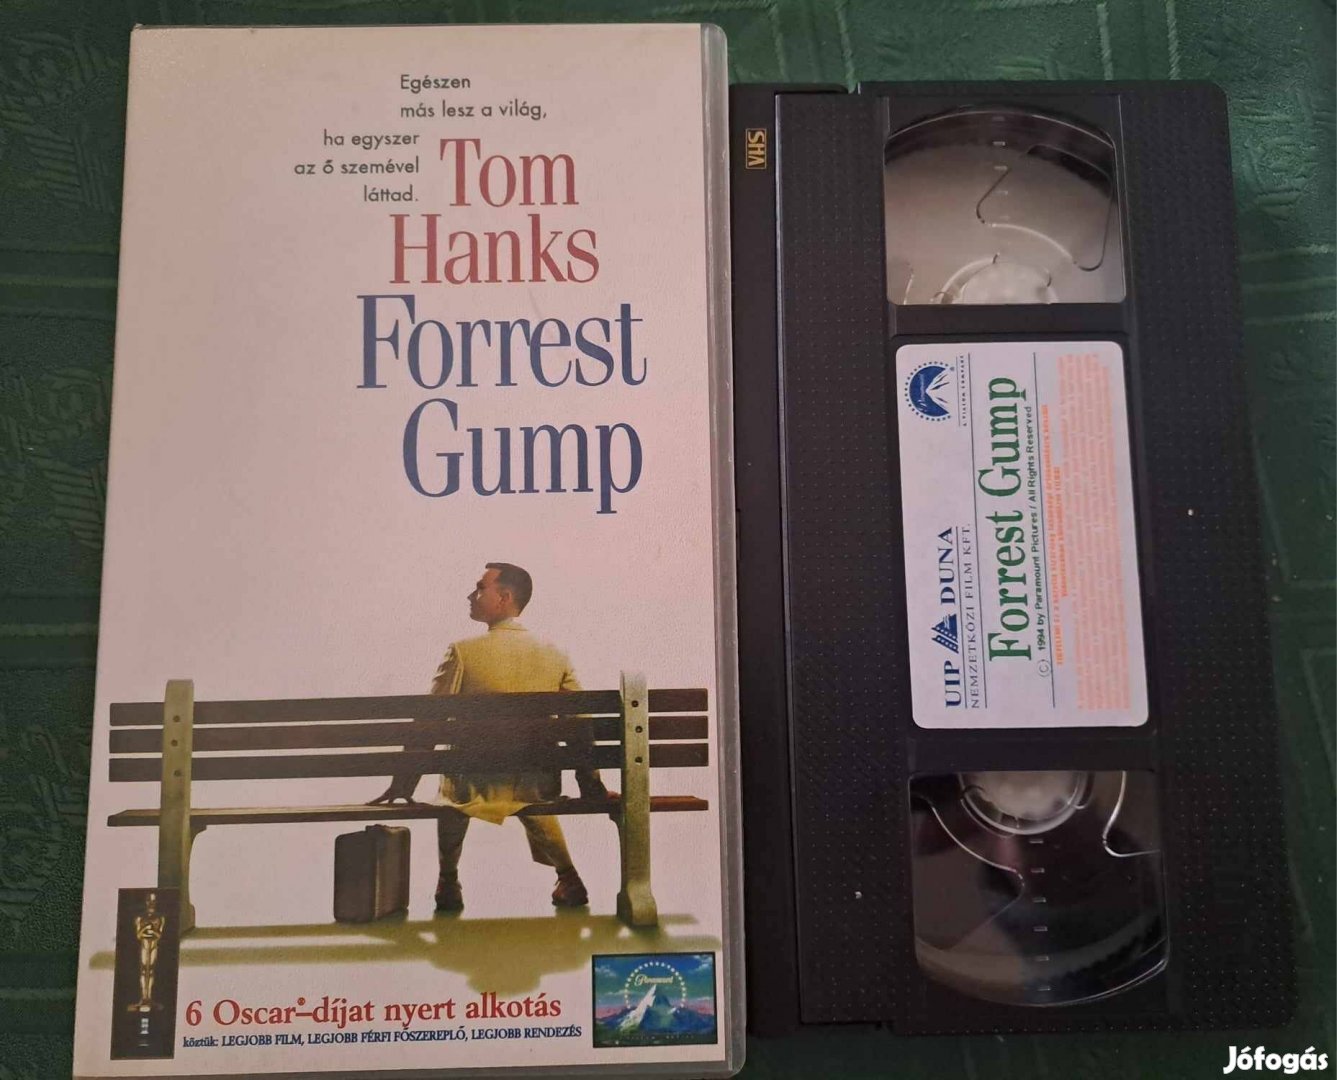 Forrest Gump VHS